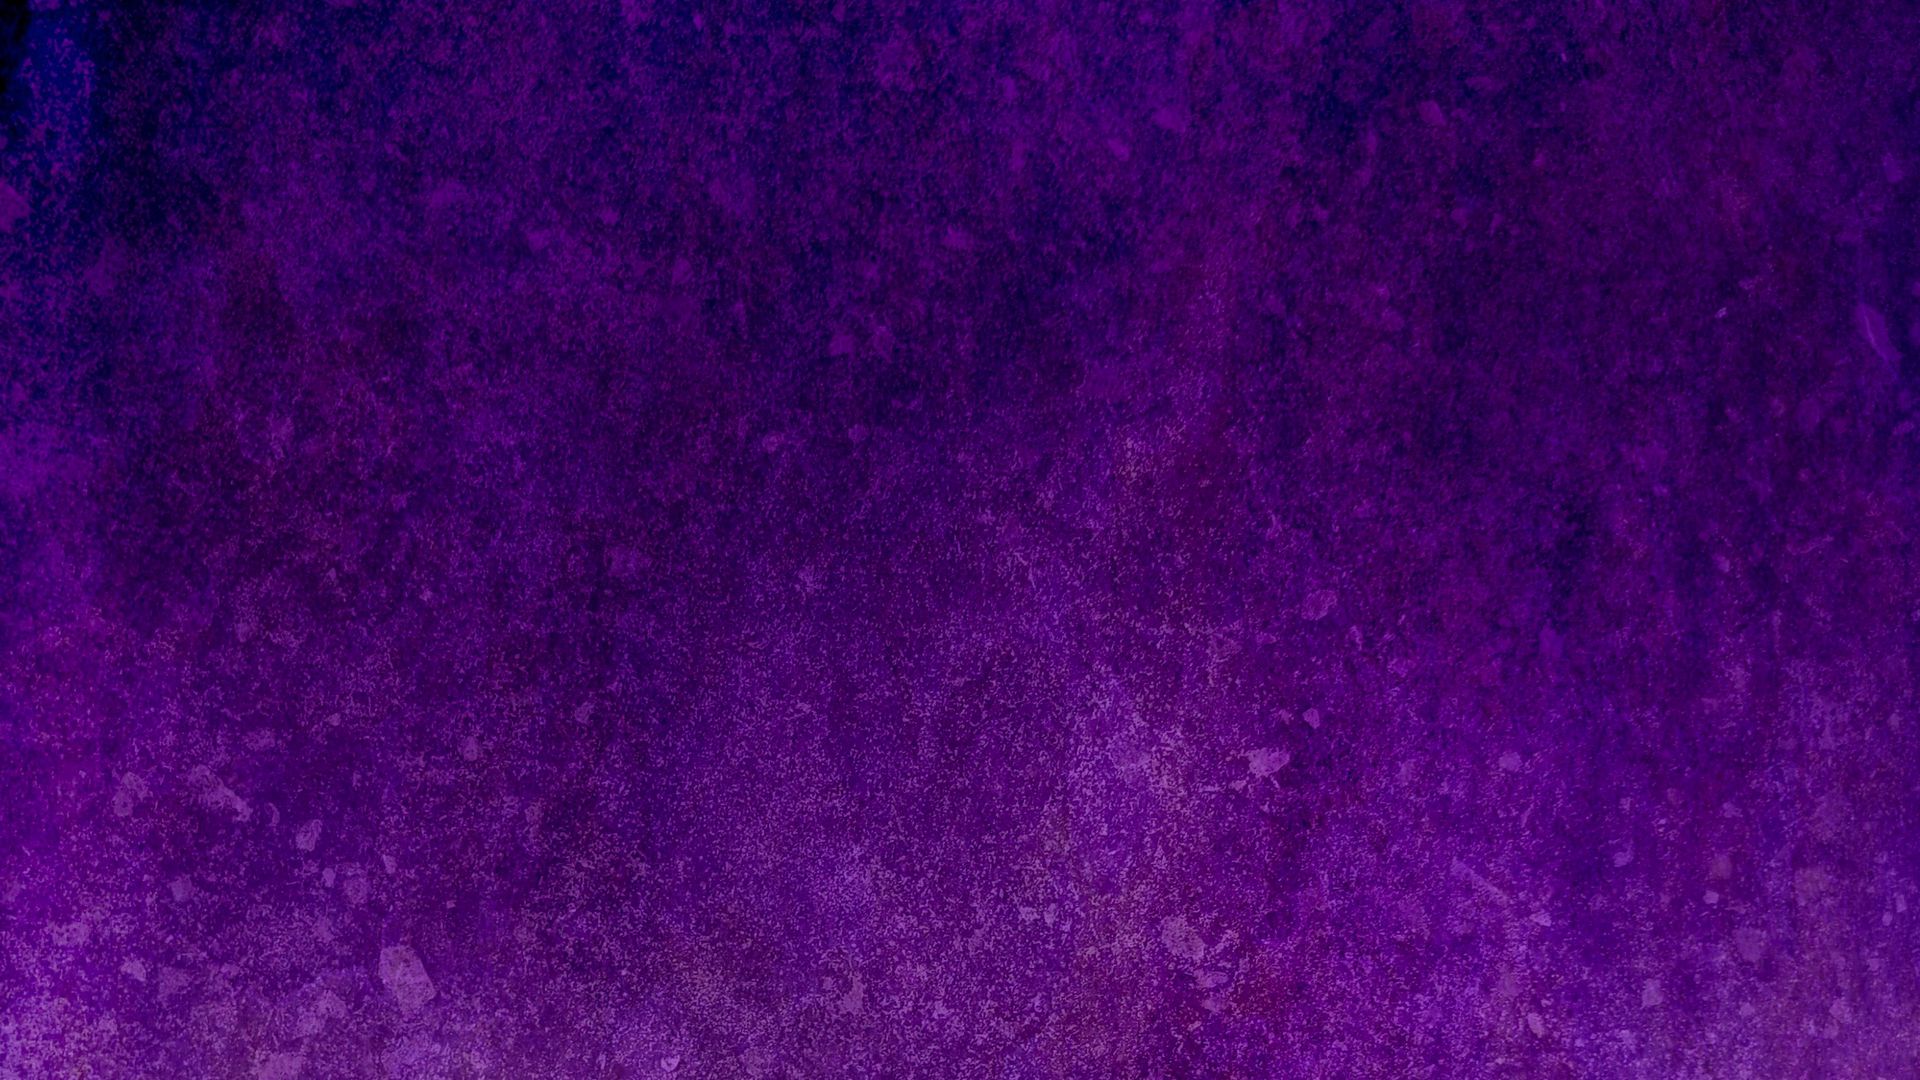 Với Purple Texture Spots, tất cả những yêu cầu về hình thức, độ bắt mắt, cũng như độ sáng tạo sẽ được đáp ứng một cách hoàn hảo. Màu tím phối hợp với các đốm nổi bật tạo thành một hiệu ứng hoàn hảo đến từng chi tiết nhỏ nhất. Hãy sẵn sàng khám phá những điều tuyệt vời trên hình ảnh này!